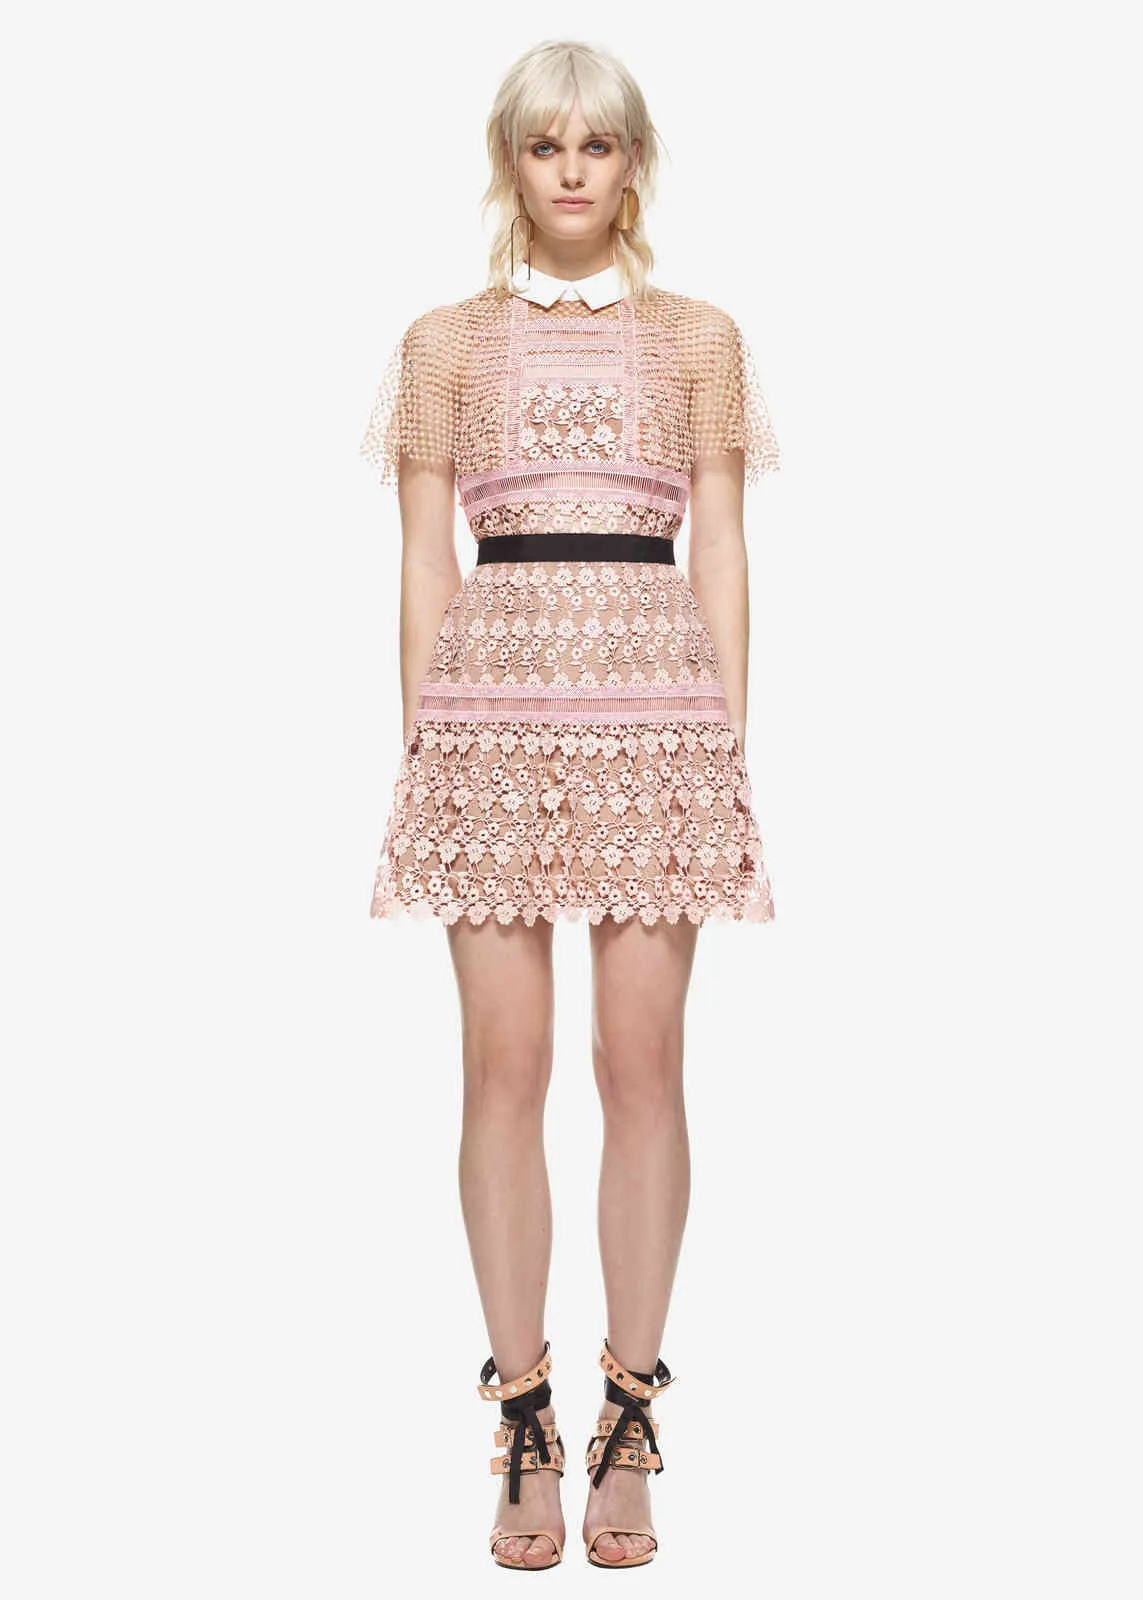 Hohe Qualität Sommer Runway Selbstporträt Kleider Elegante Aushöhlen Patchwork Mode Kurze Mini Rosa Kleid 210506